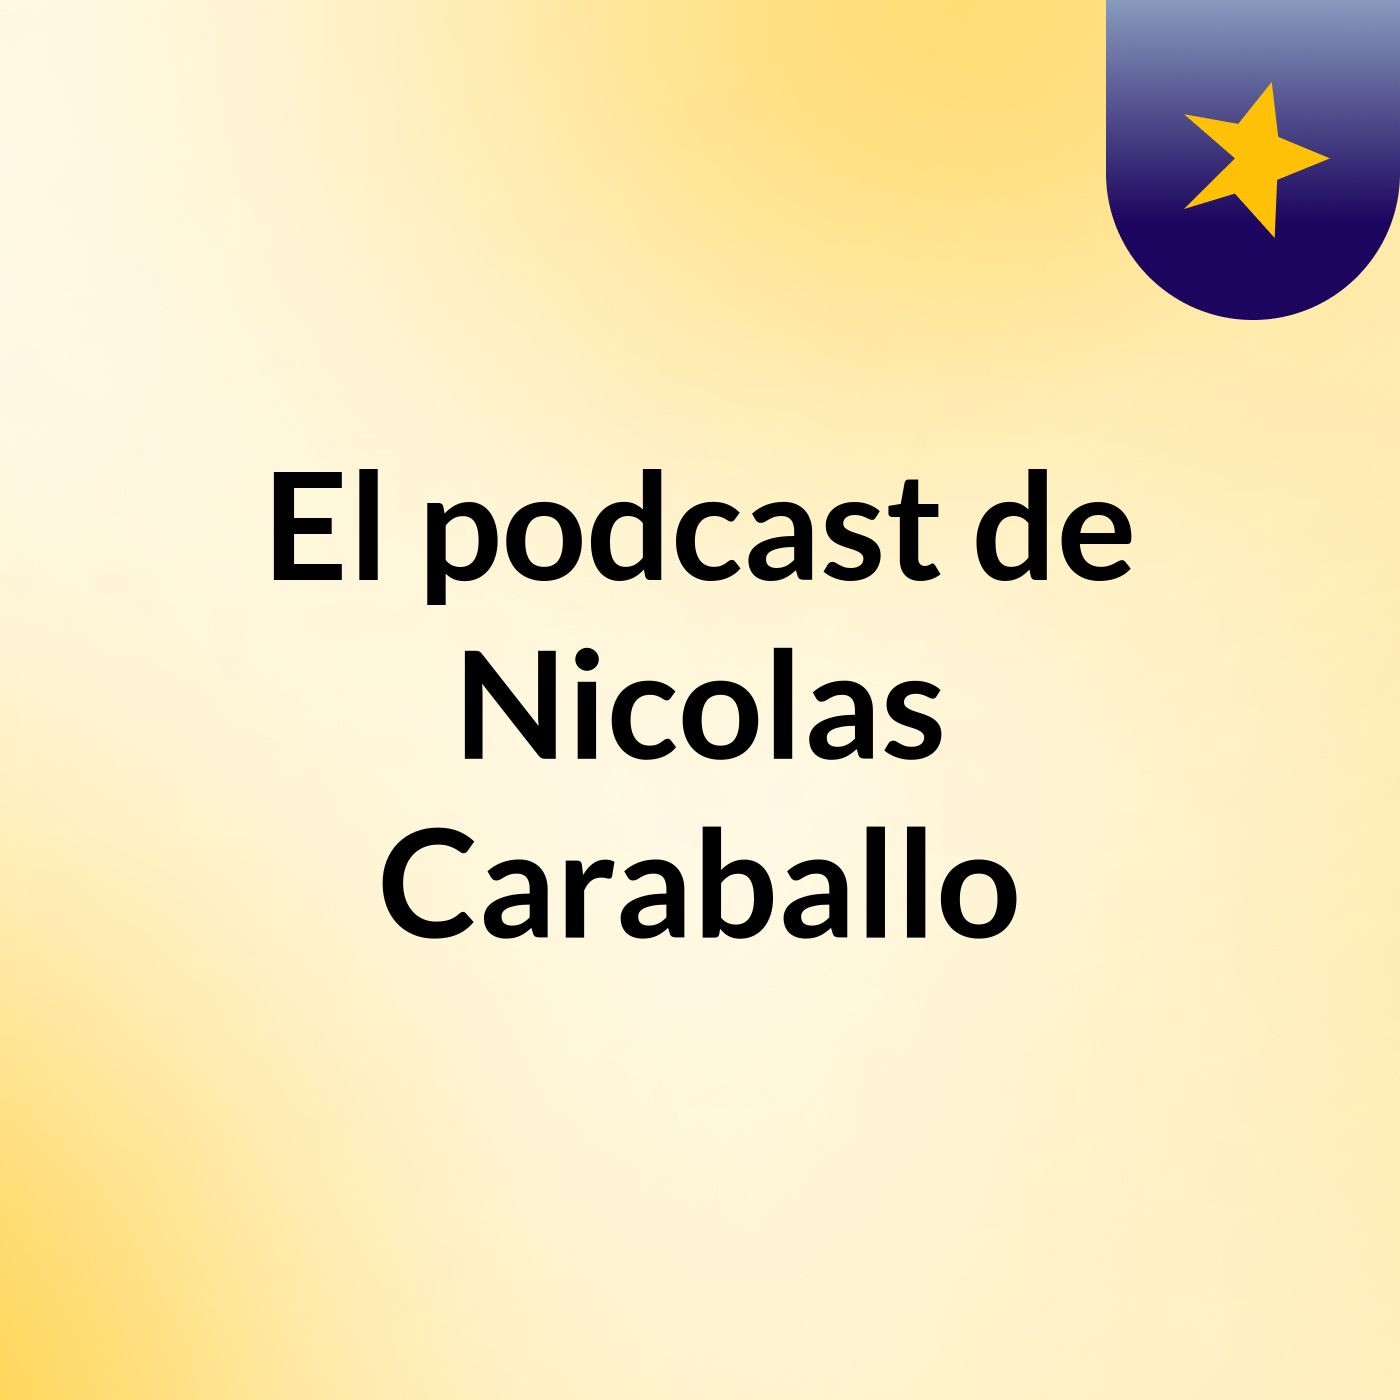 Episodio 21 - El podcast de Nicolas Caraballo